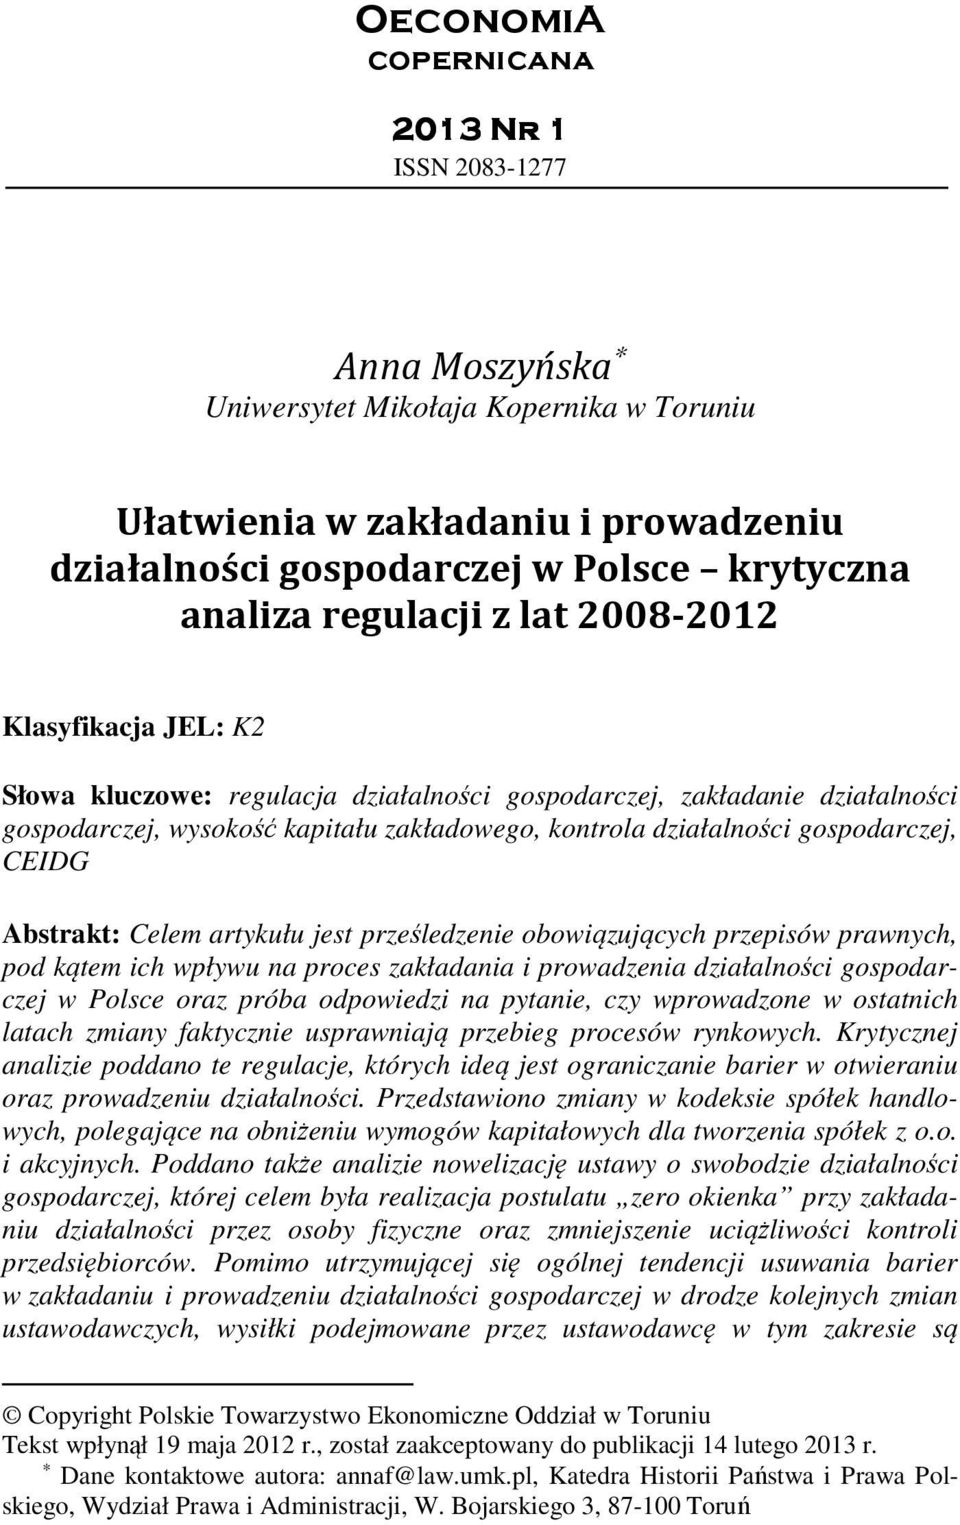 gospodarczej, CEIDG Abstrakt: Celem artykułu jest prześledzenie obowiązujących przepisów prawnych, pod kątem ich wpływu na proces zakładania i prowadzenia działalności gospodarczej w Polsce oraz